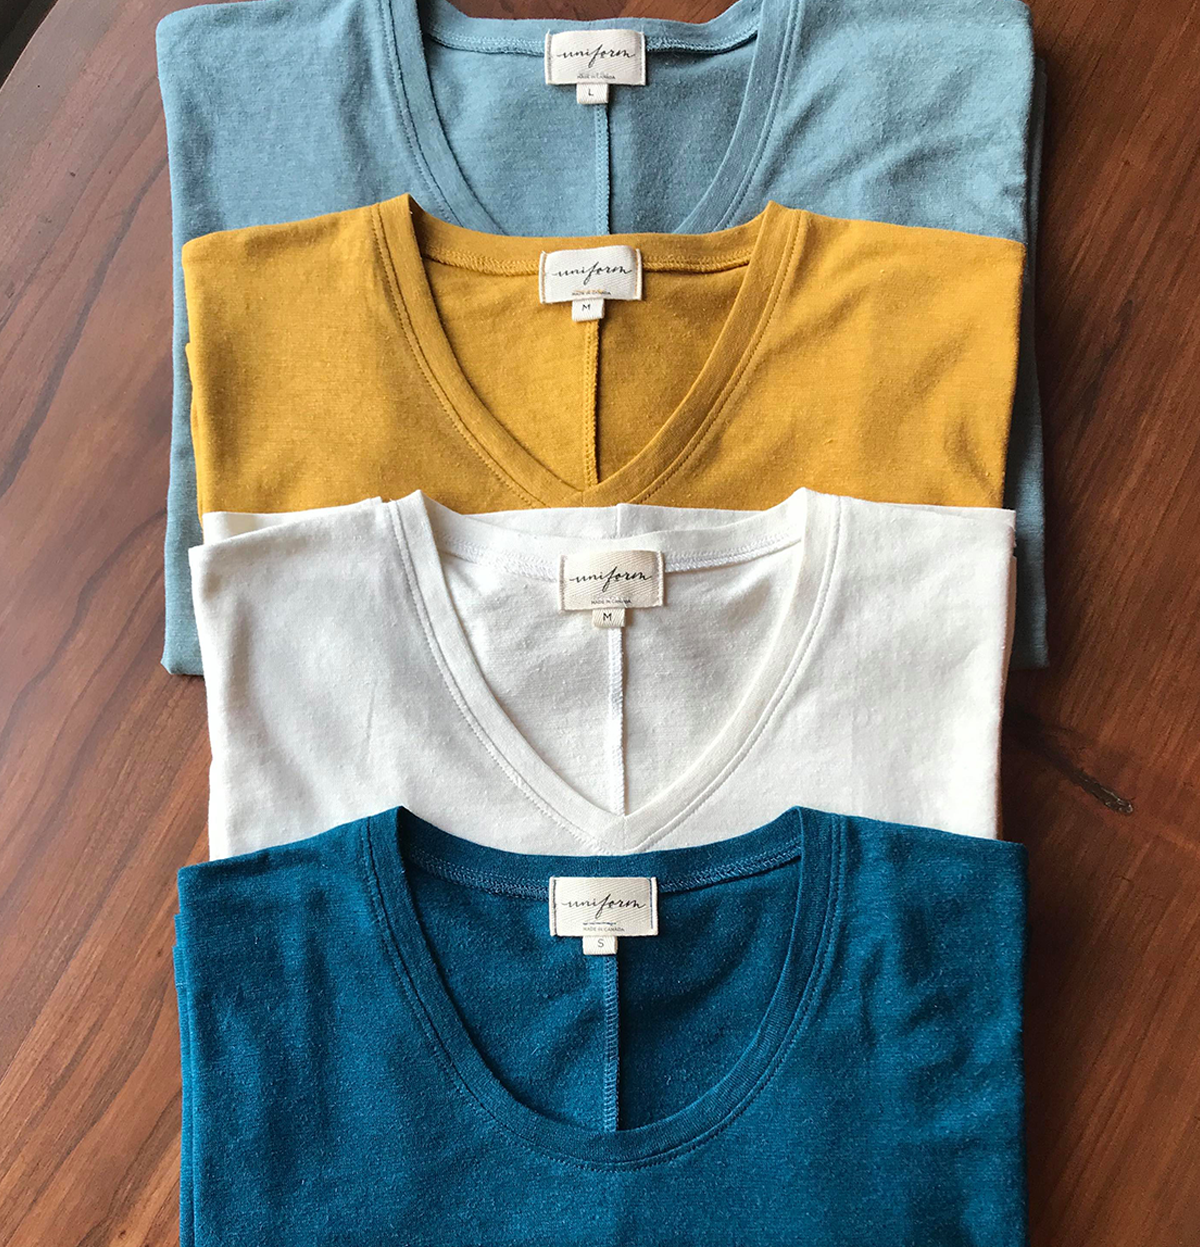 The T Shirt-Scoop Neck-Hemp Organic Cotton Jersey-Tall